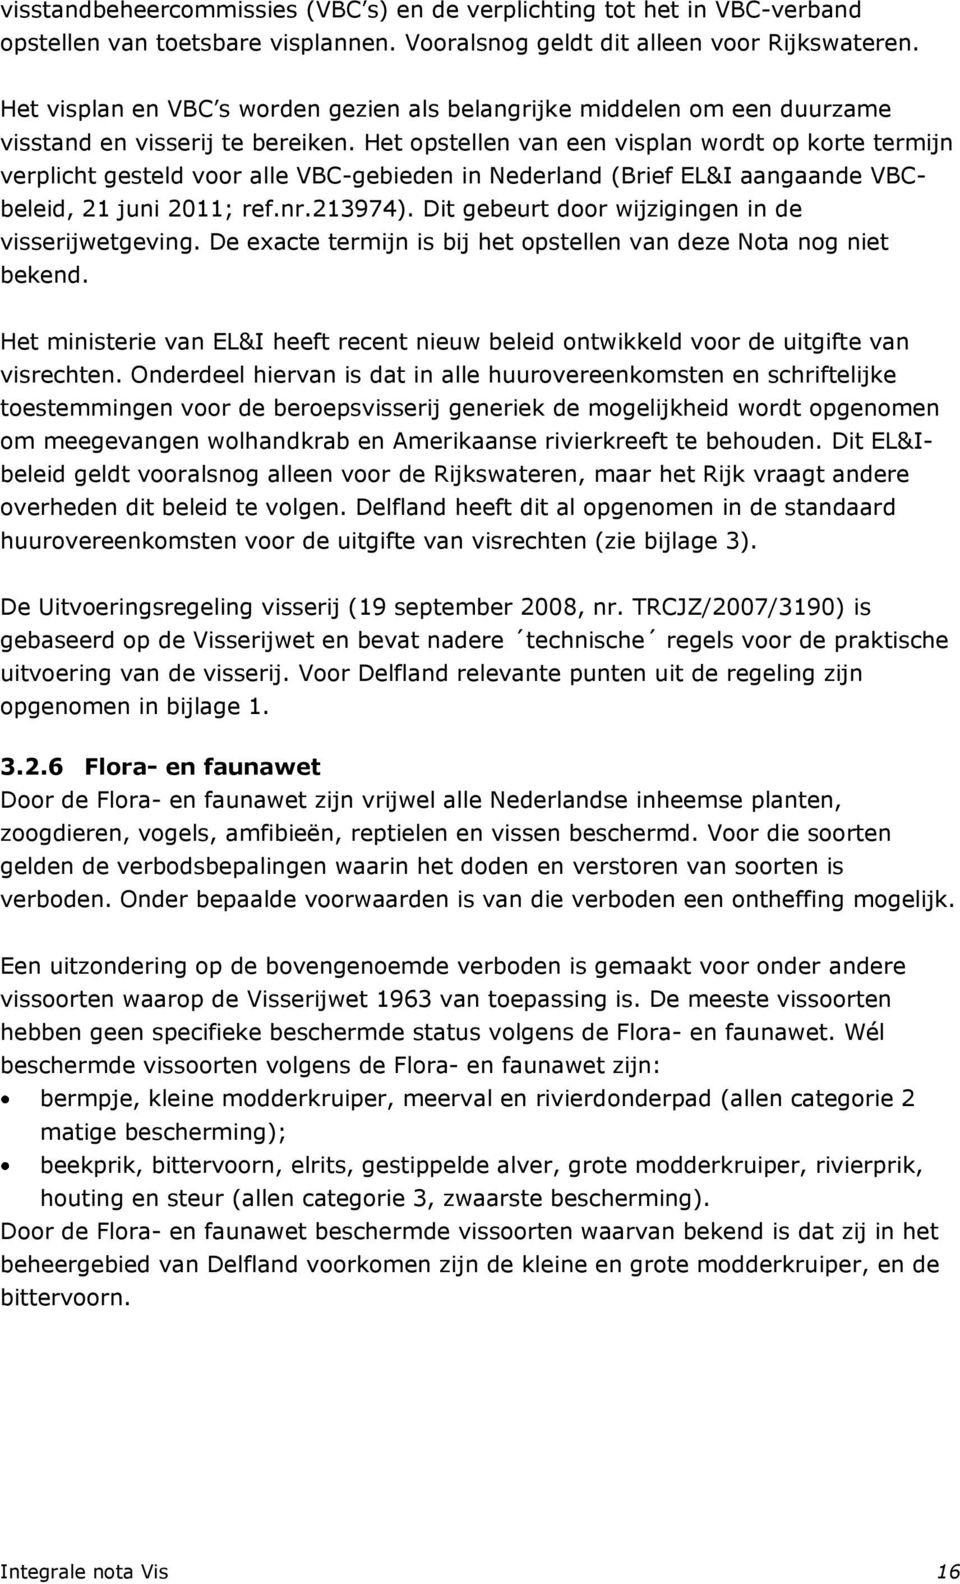 Het opstellen van een visplan wordt op korte termijn verplicht gesteld voor alle VBC-gebieden in Nederland (Brief EL&I aangaande VBCbeleid, 21 juni 2011; ref.nr.213974).